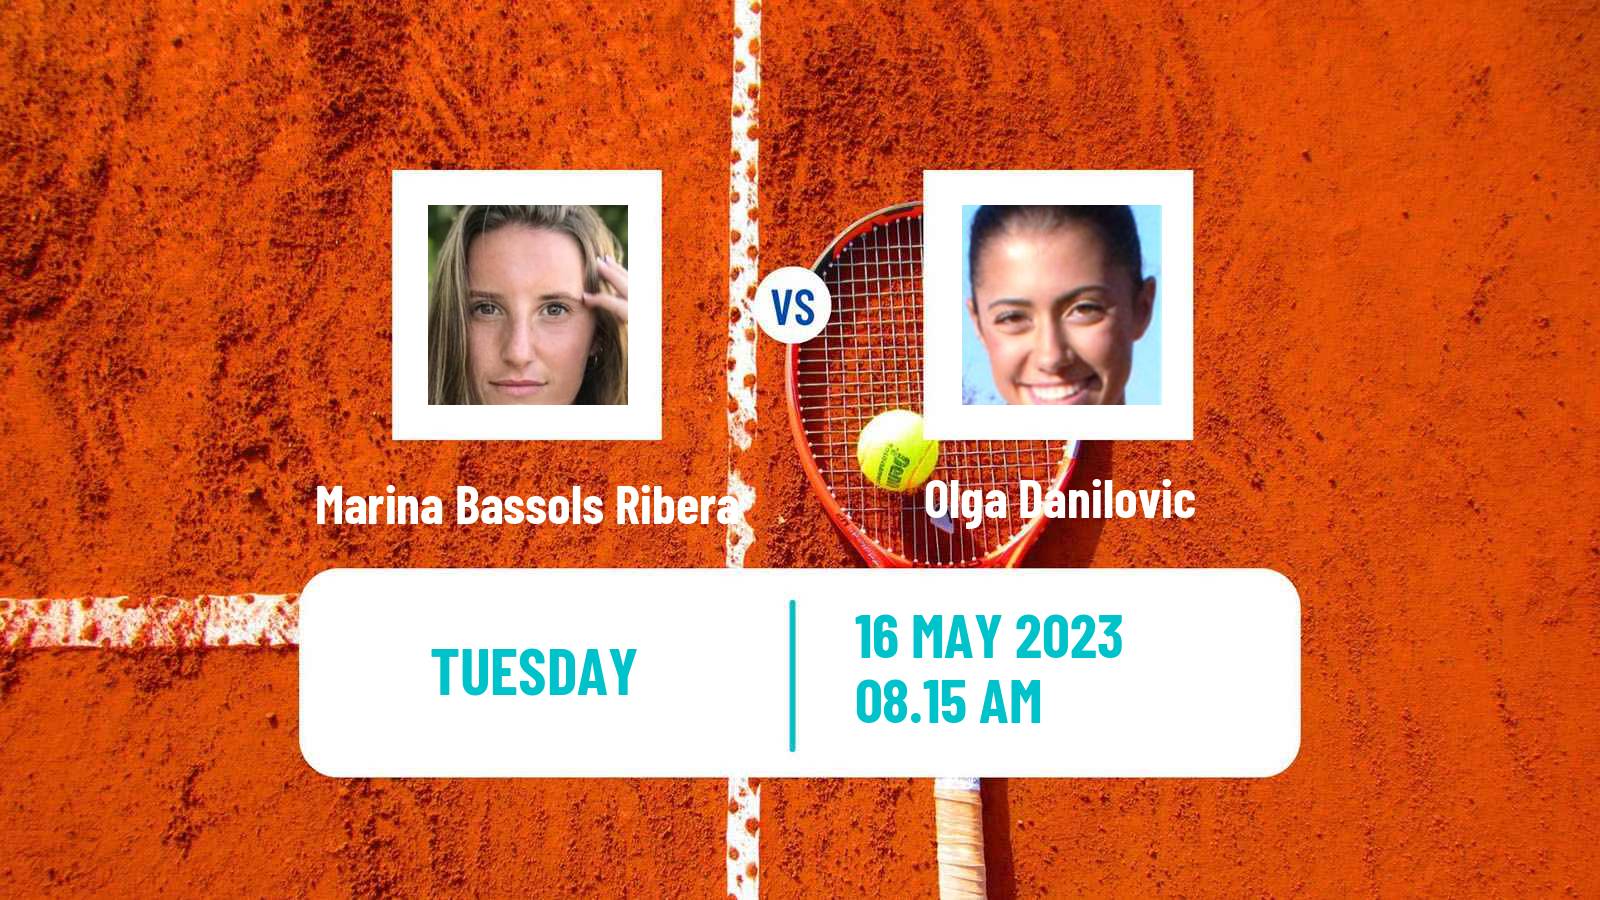 Tennis ITF W100 Madrid Women Marina Bassols Ribera - Olga Danilovic